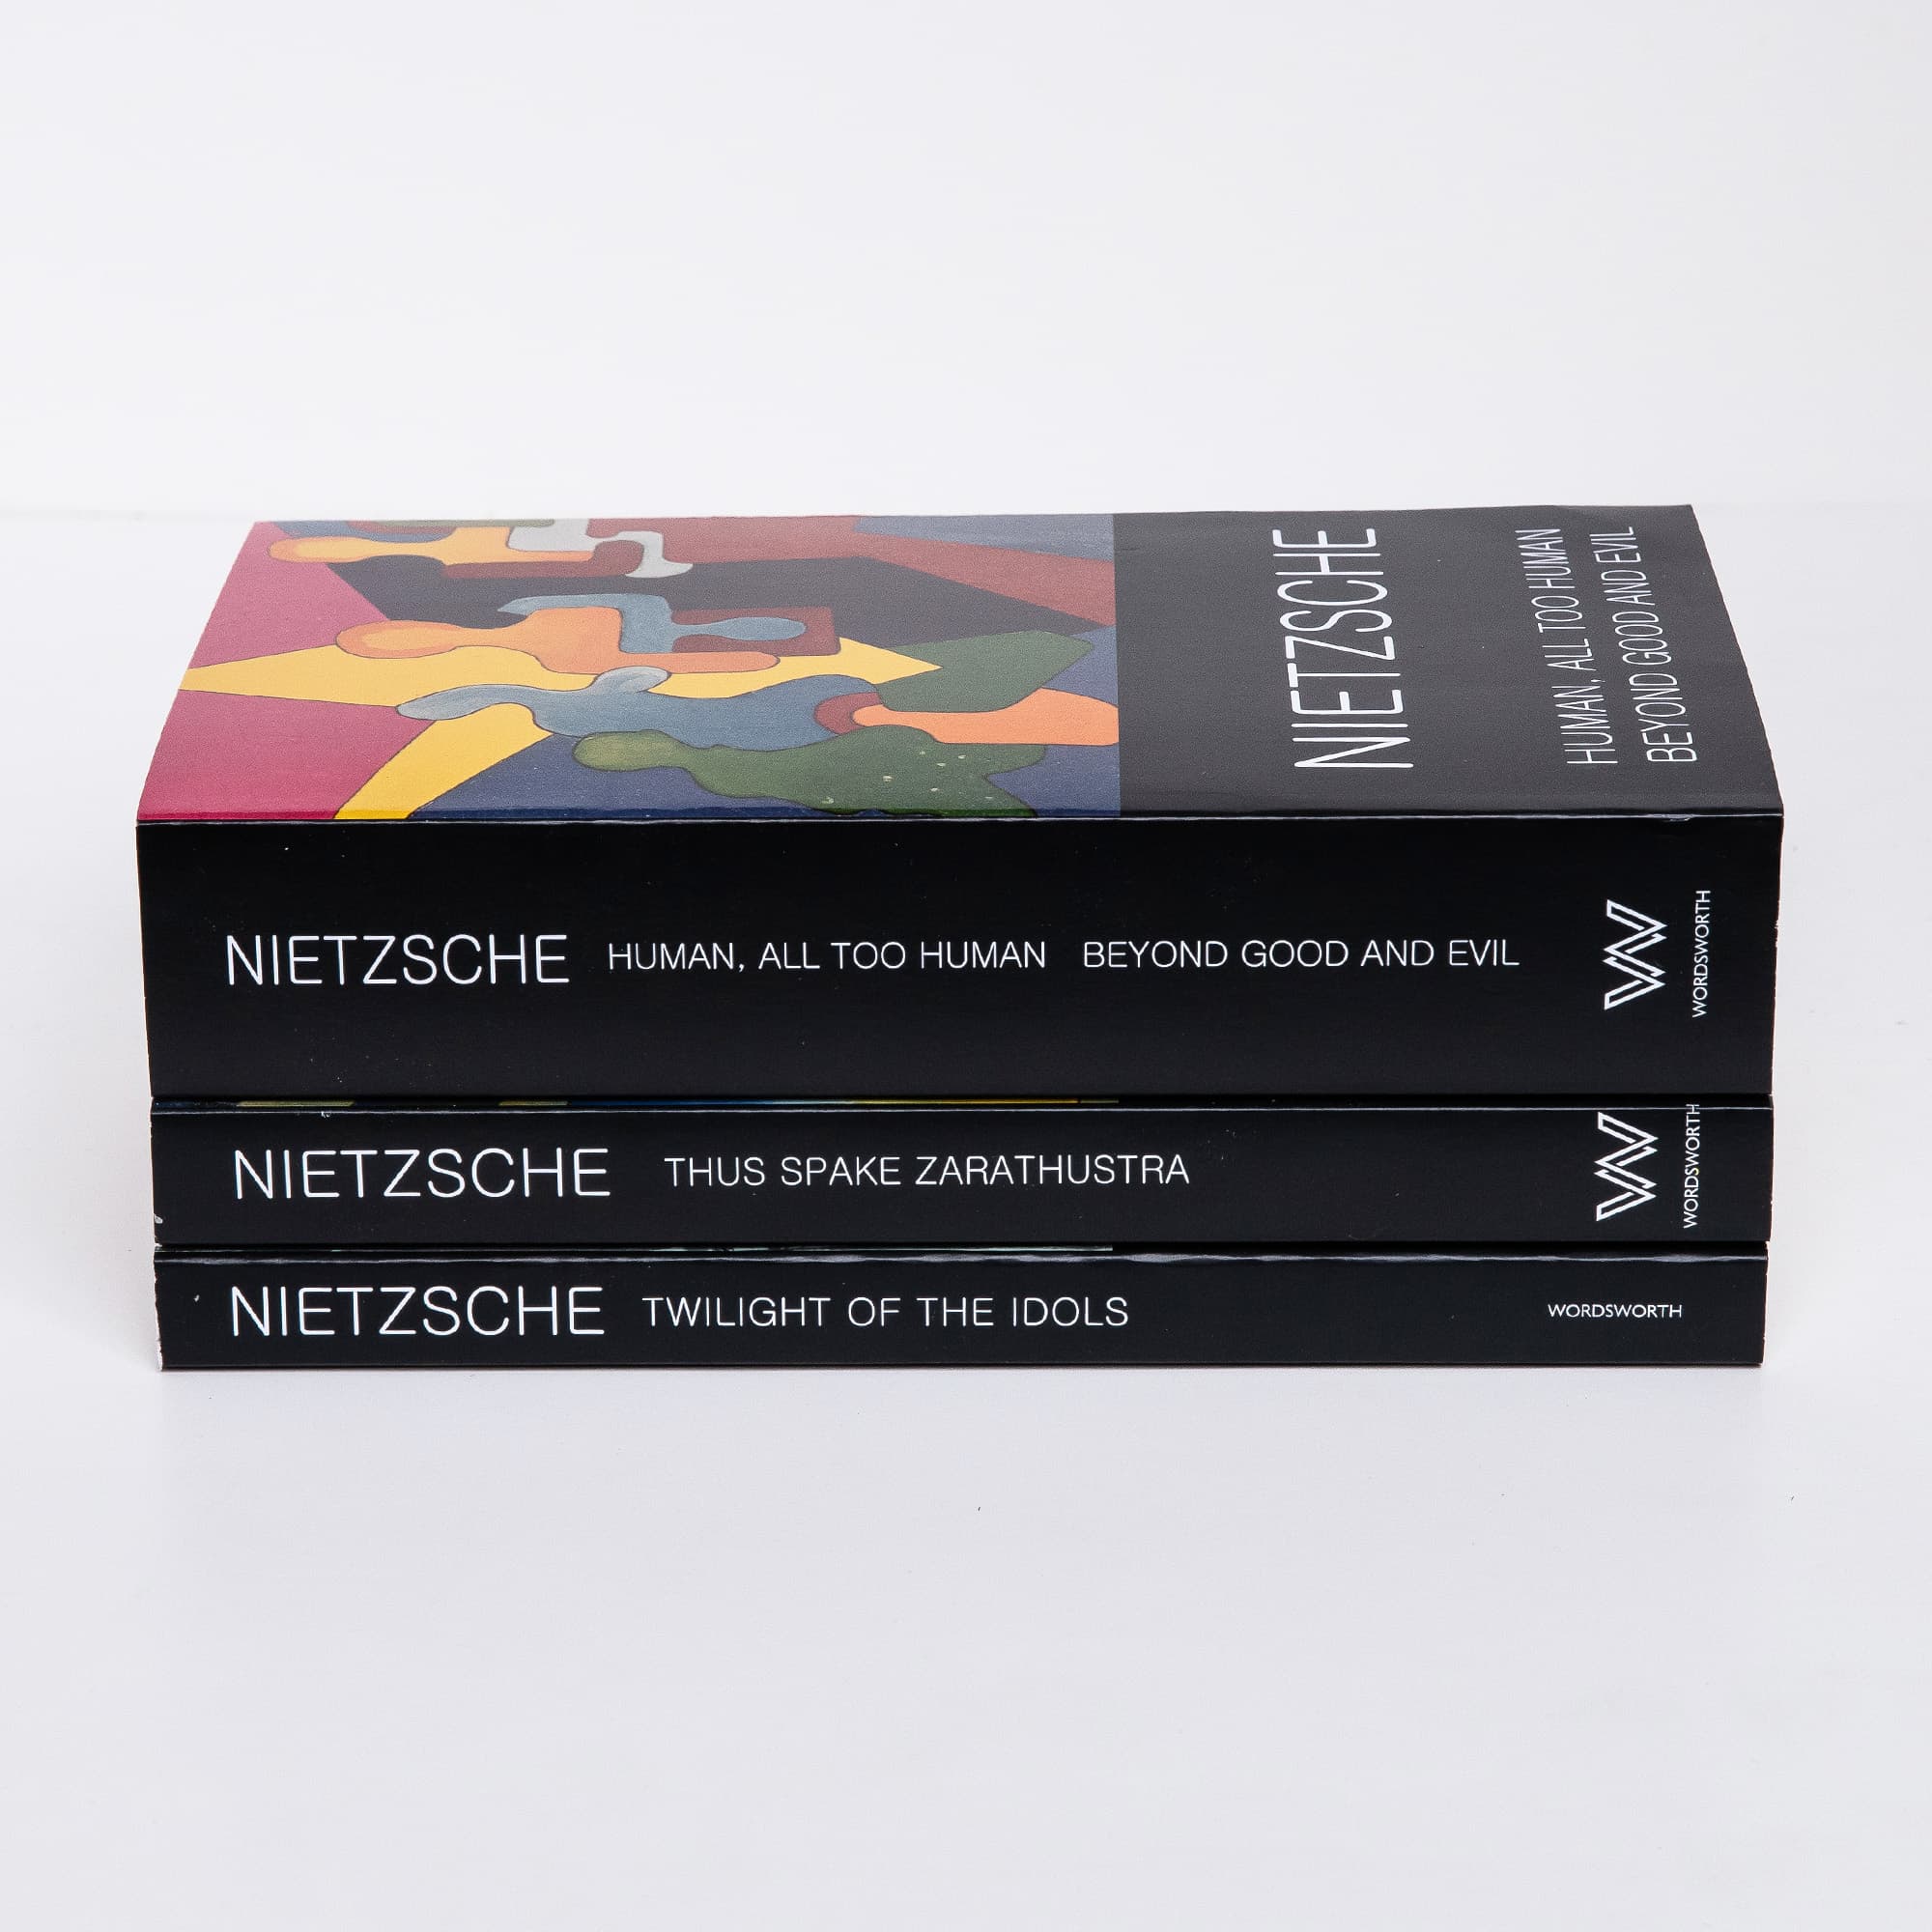 Nietzsche book stack